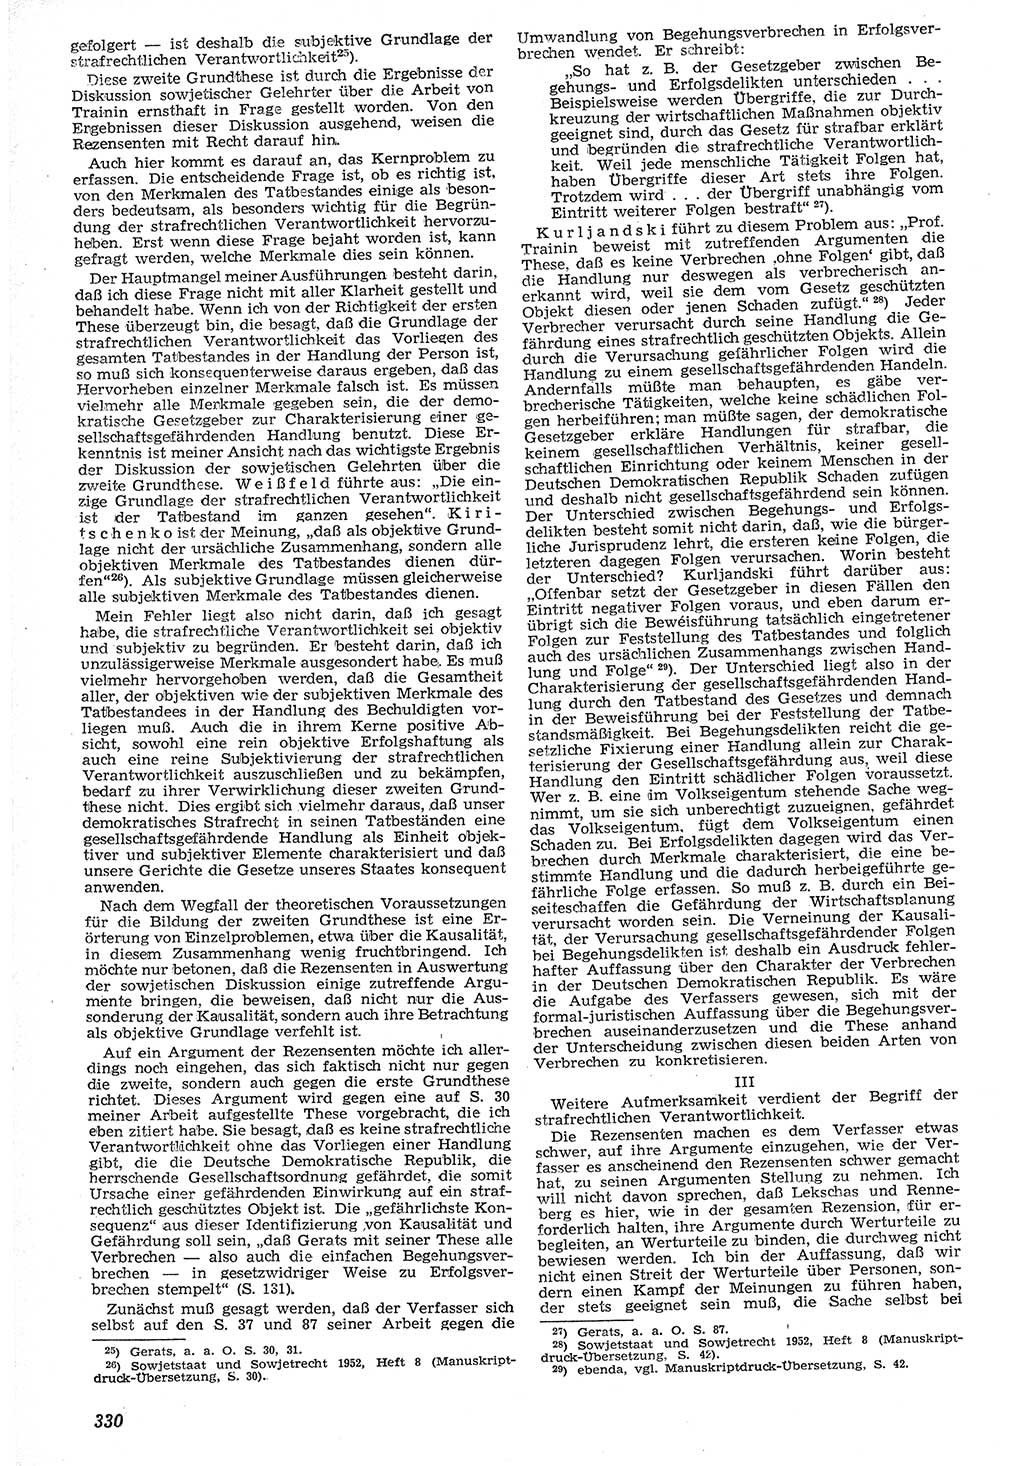 Neue Justiz (NJ), Zeitschrift für Recht und Rechtswissenschaft [Deutsche Demokratische Republik (DDR)], 7. Jahrgang 1953, Seite 330 (NJ DDR 1953, S. 330)